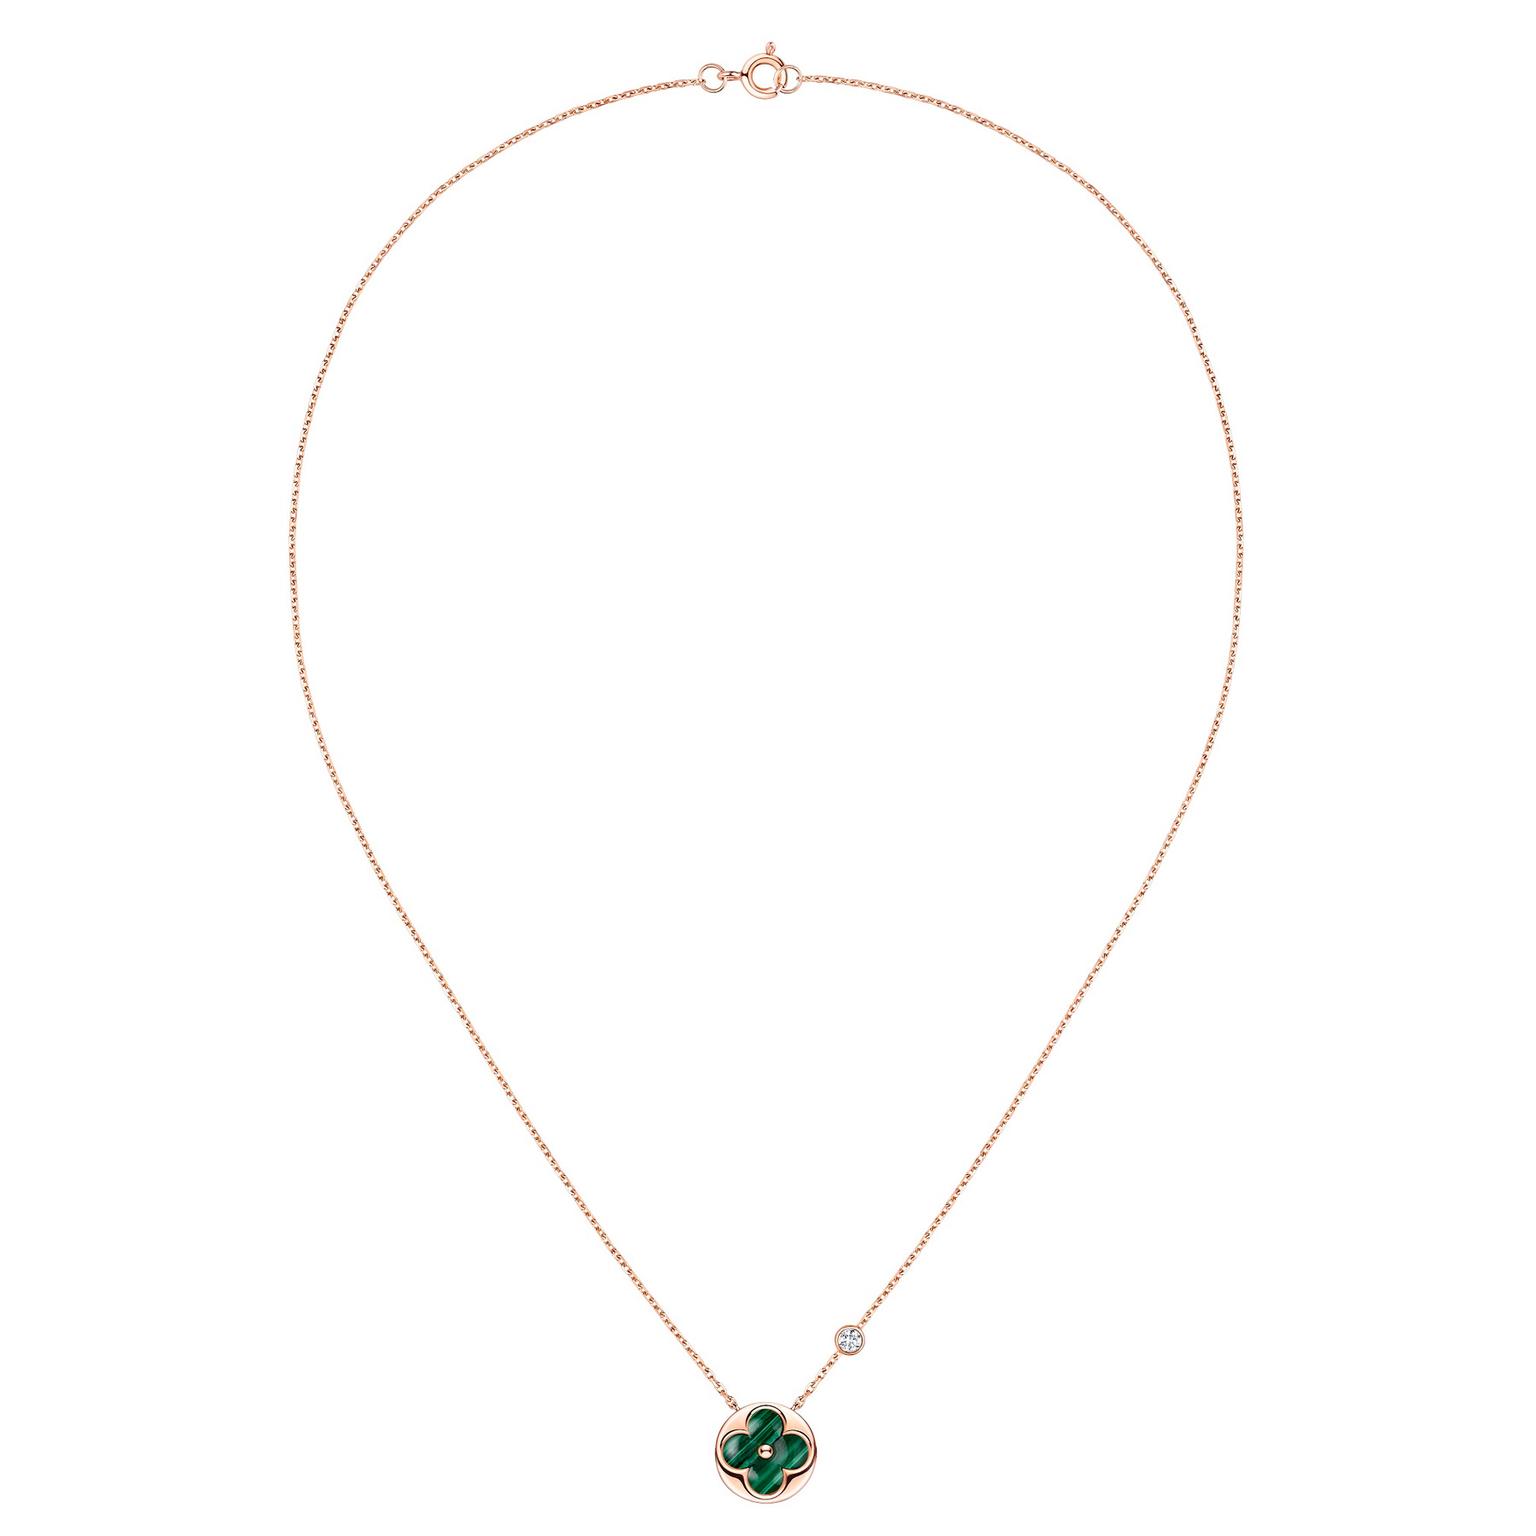 Color Blossom BB Sun necklace, Louis Vuitton